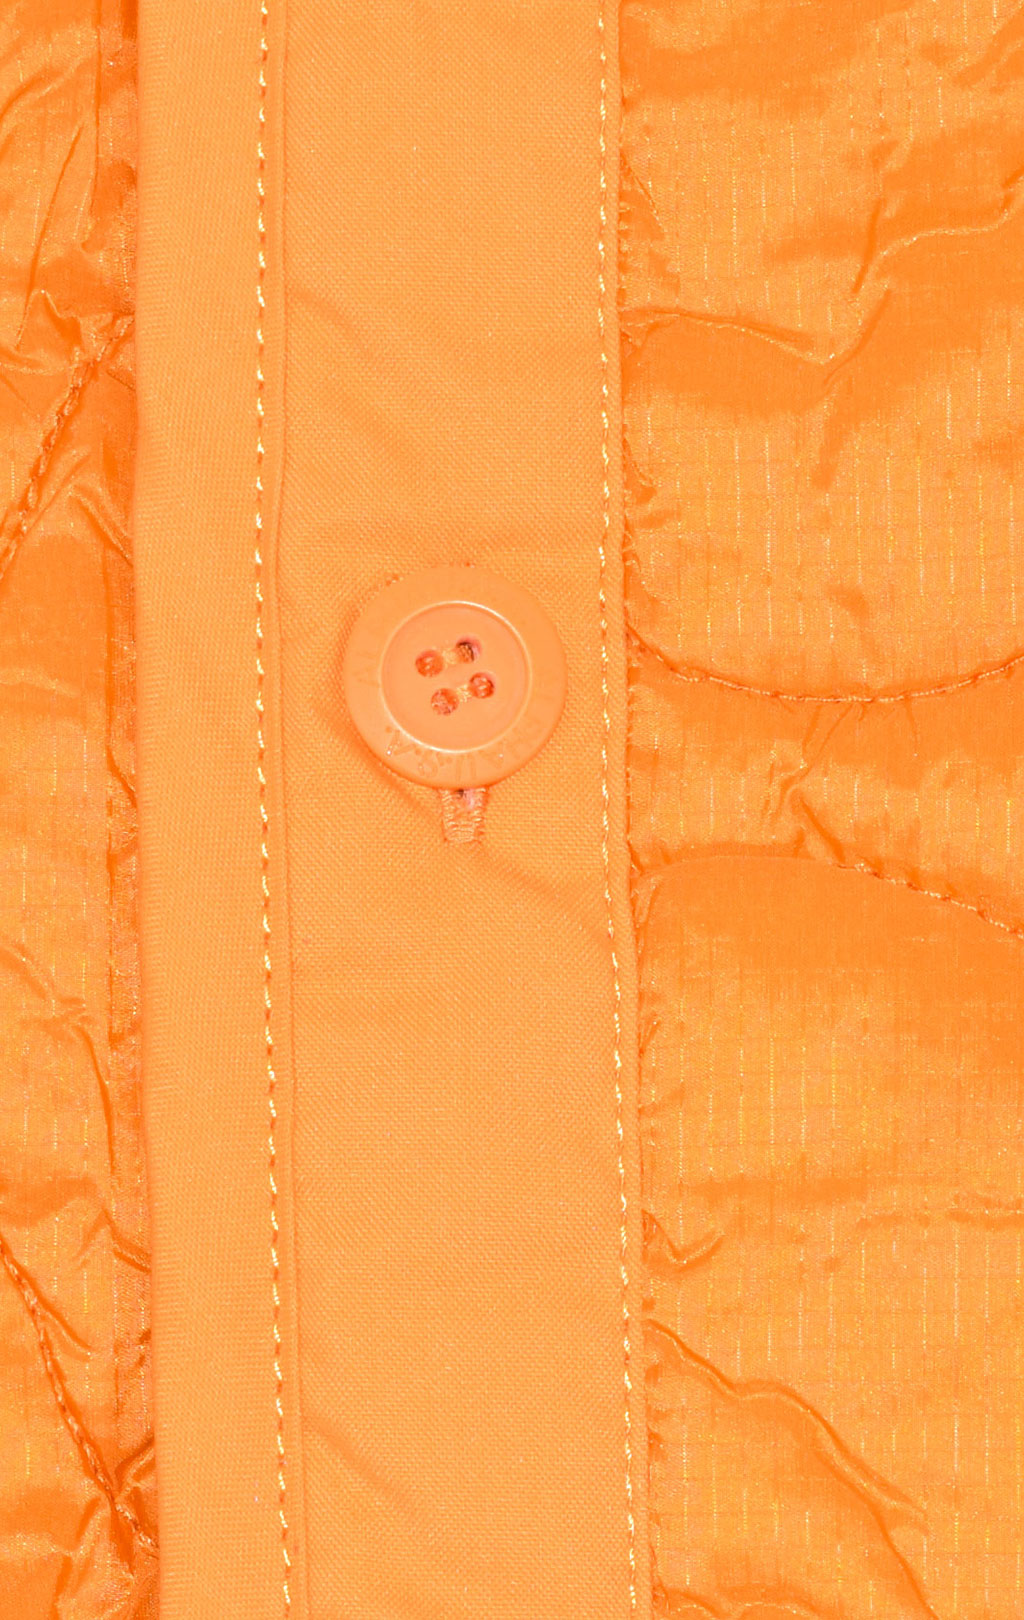 Куртка-жилет ALPHA INDUSTRIES ALS UTILITY VEST FW 21 m emergency orange 